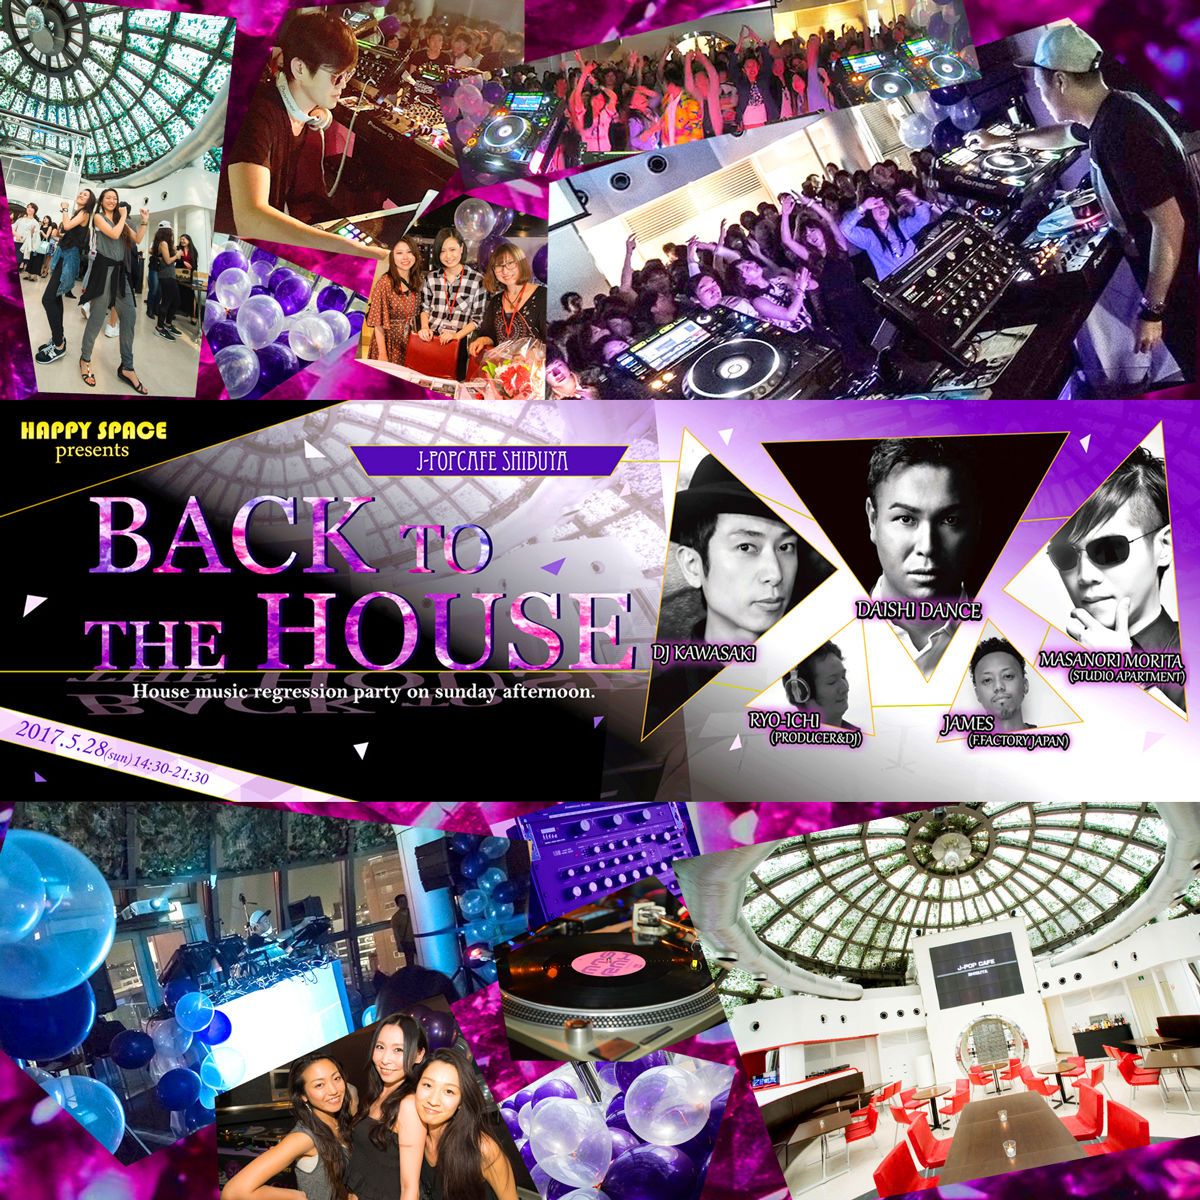 “音楽を愛する大人のハウスミュージックパーティー”「BACK TO THE HOUSE」開催。ゲストはDAISHI DANCE、Masanori Morita、DJ KAWASAKI